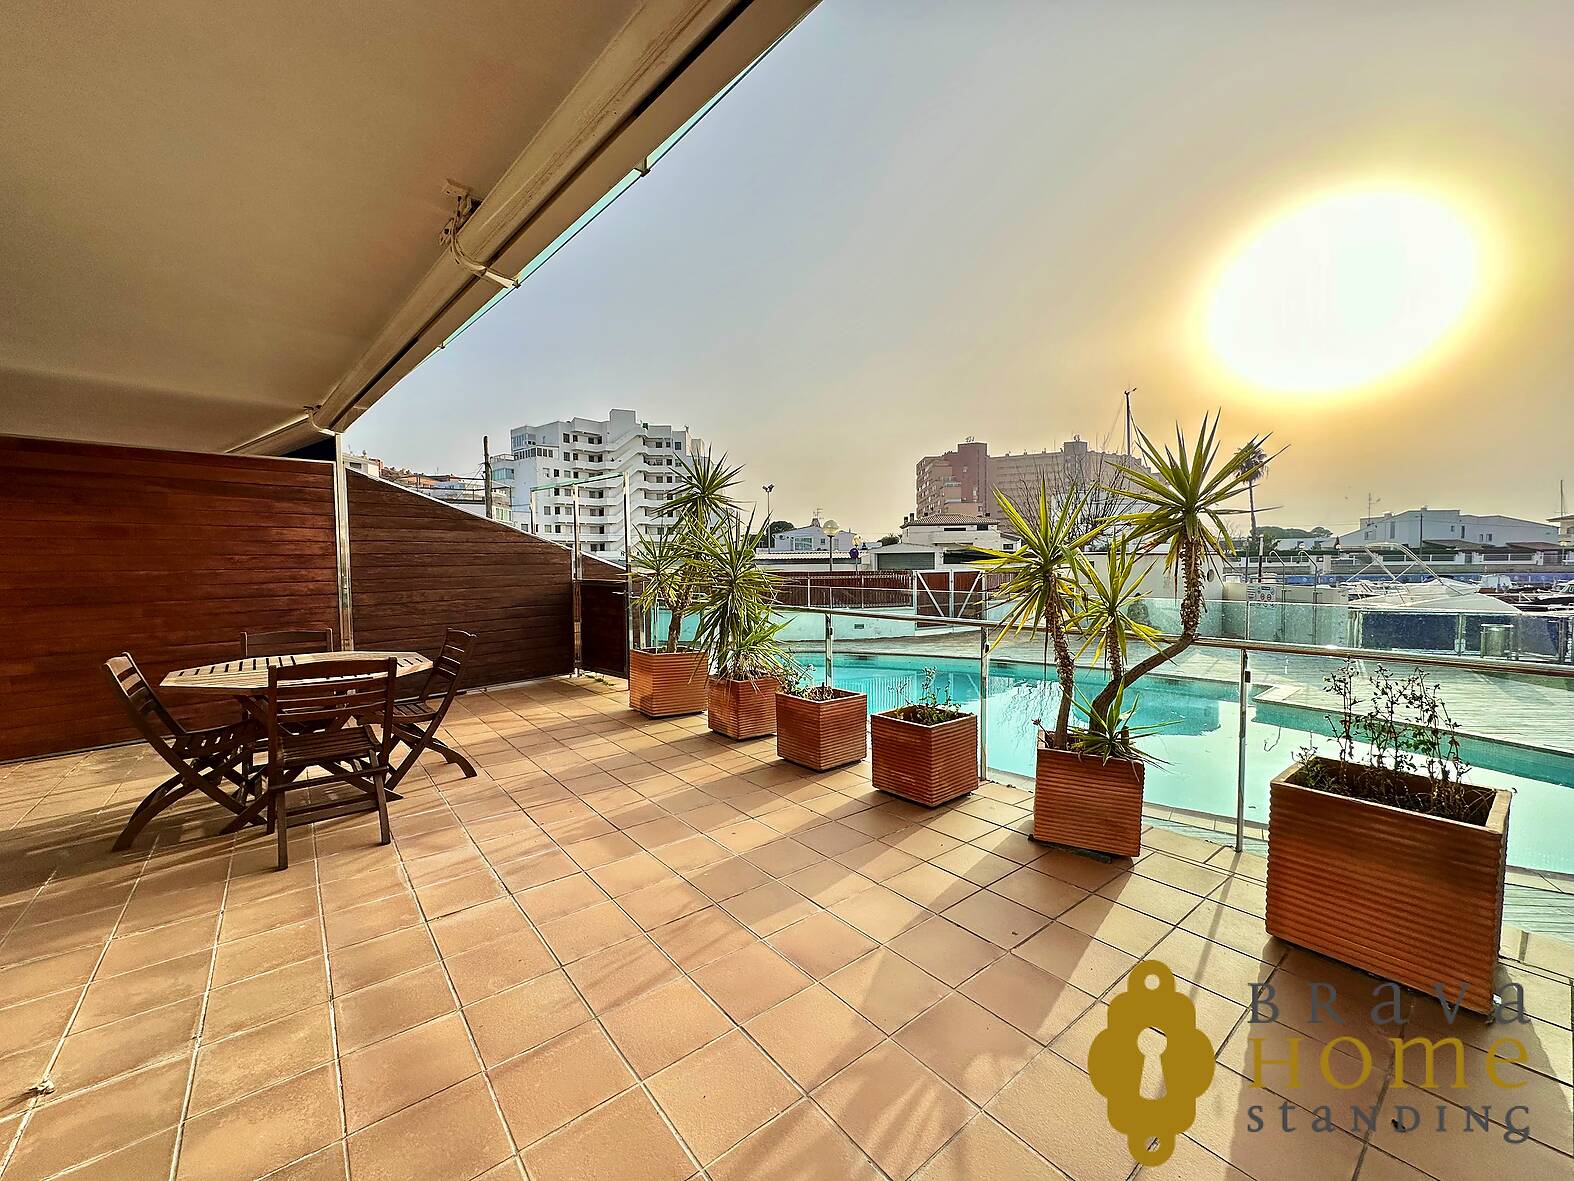 Beautiful modern apartment with pool for sale in Rosas - Santa Margarita